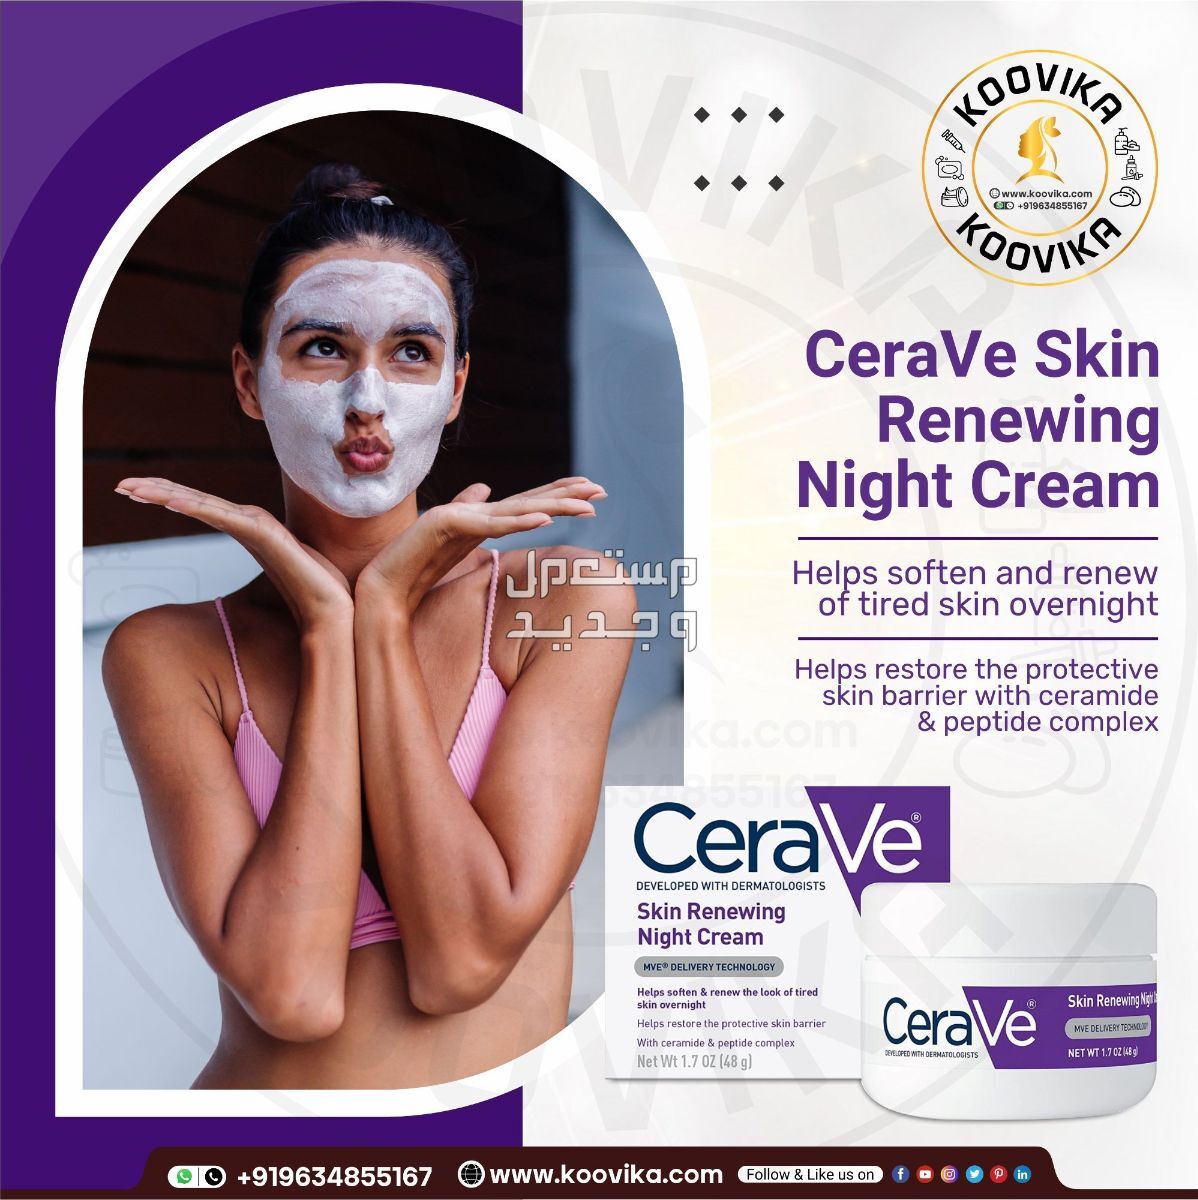 أفضل كريم ليلي للعناية بالبشرة لعام 2023 شكل كريم ليلي من CeraVe Skin Renewing Night Cream على البشرة